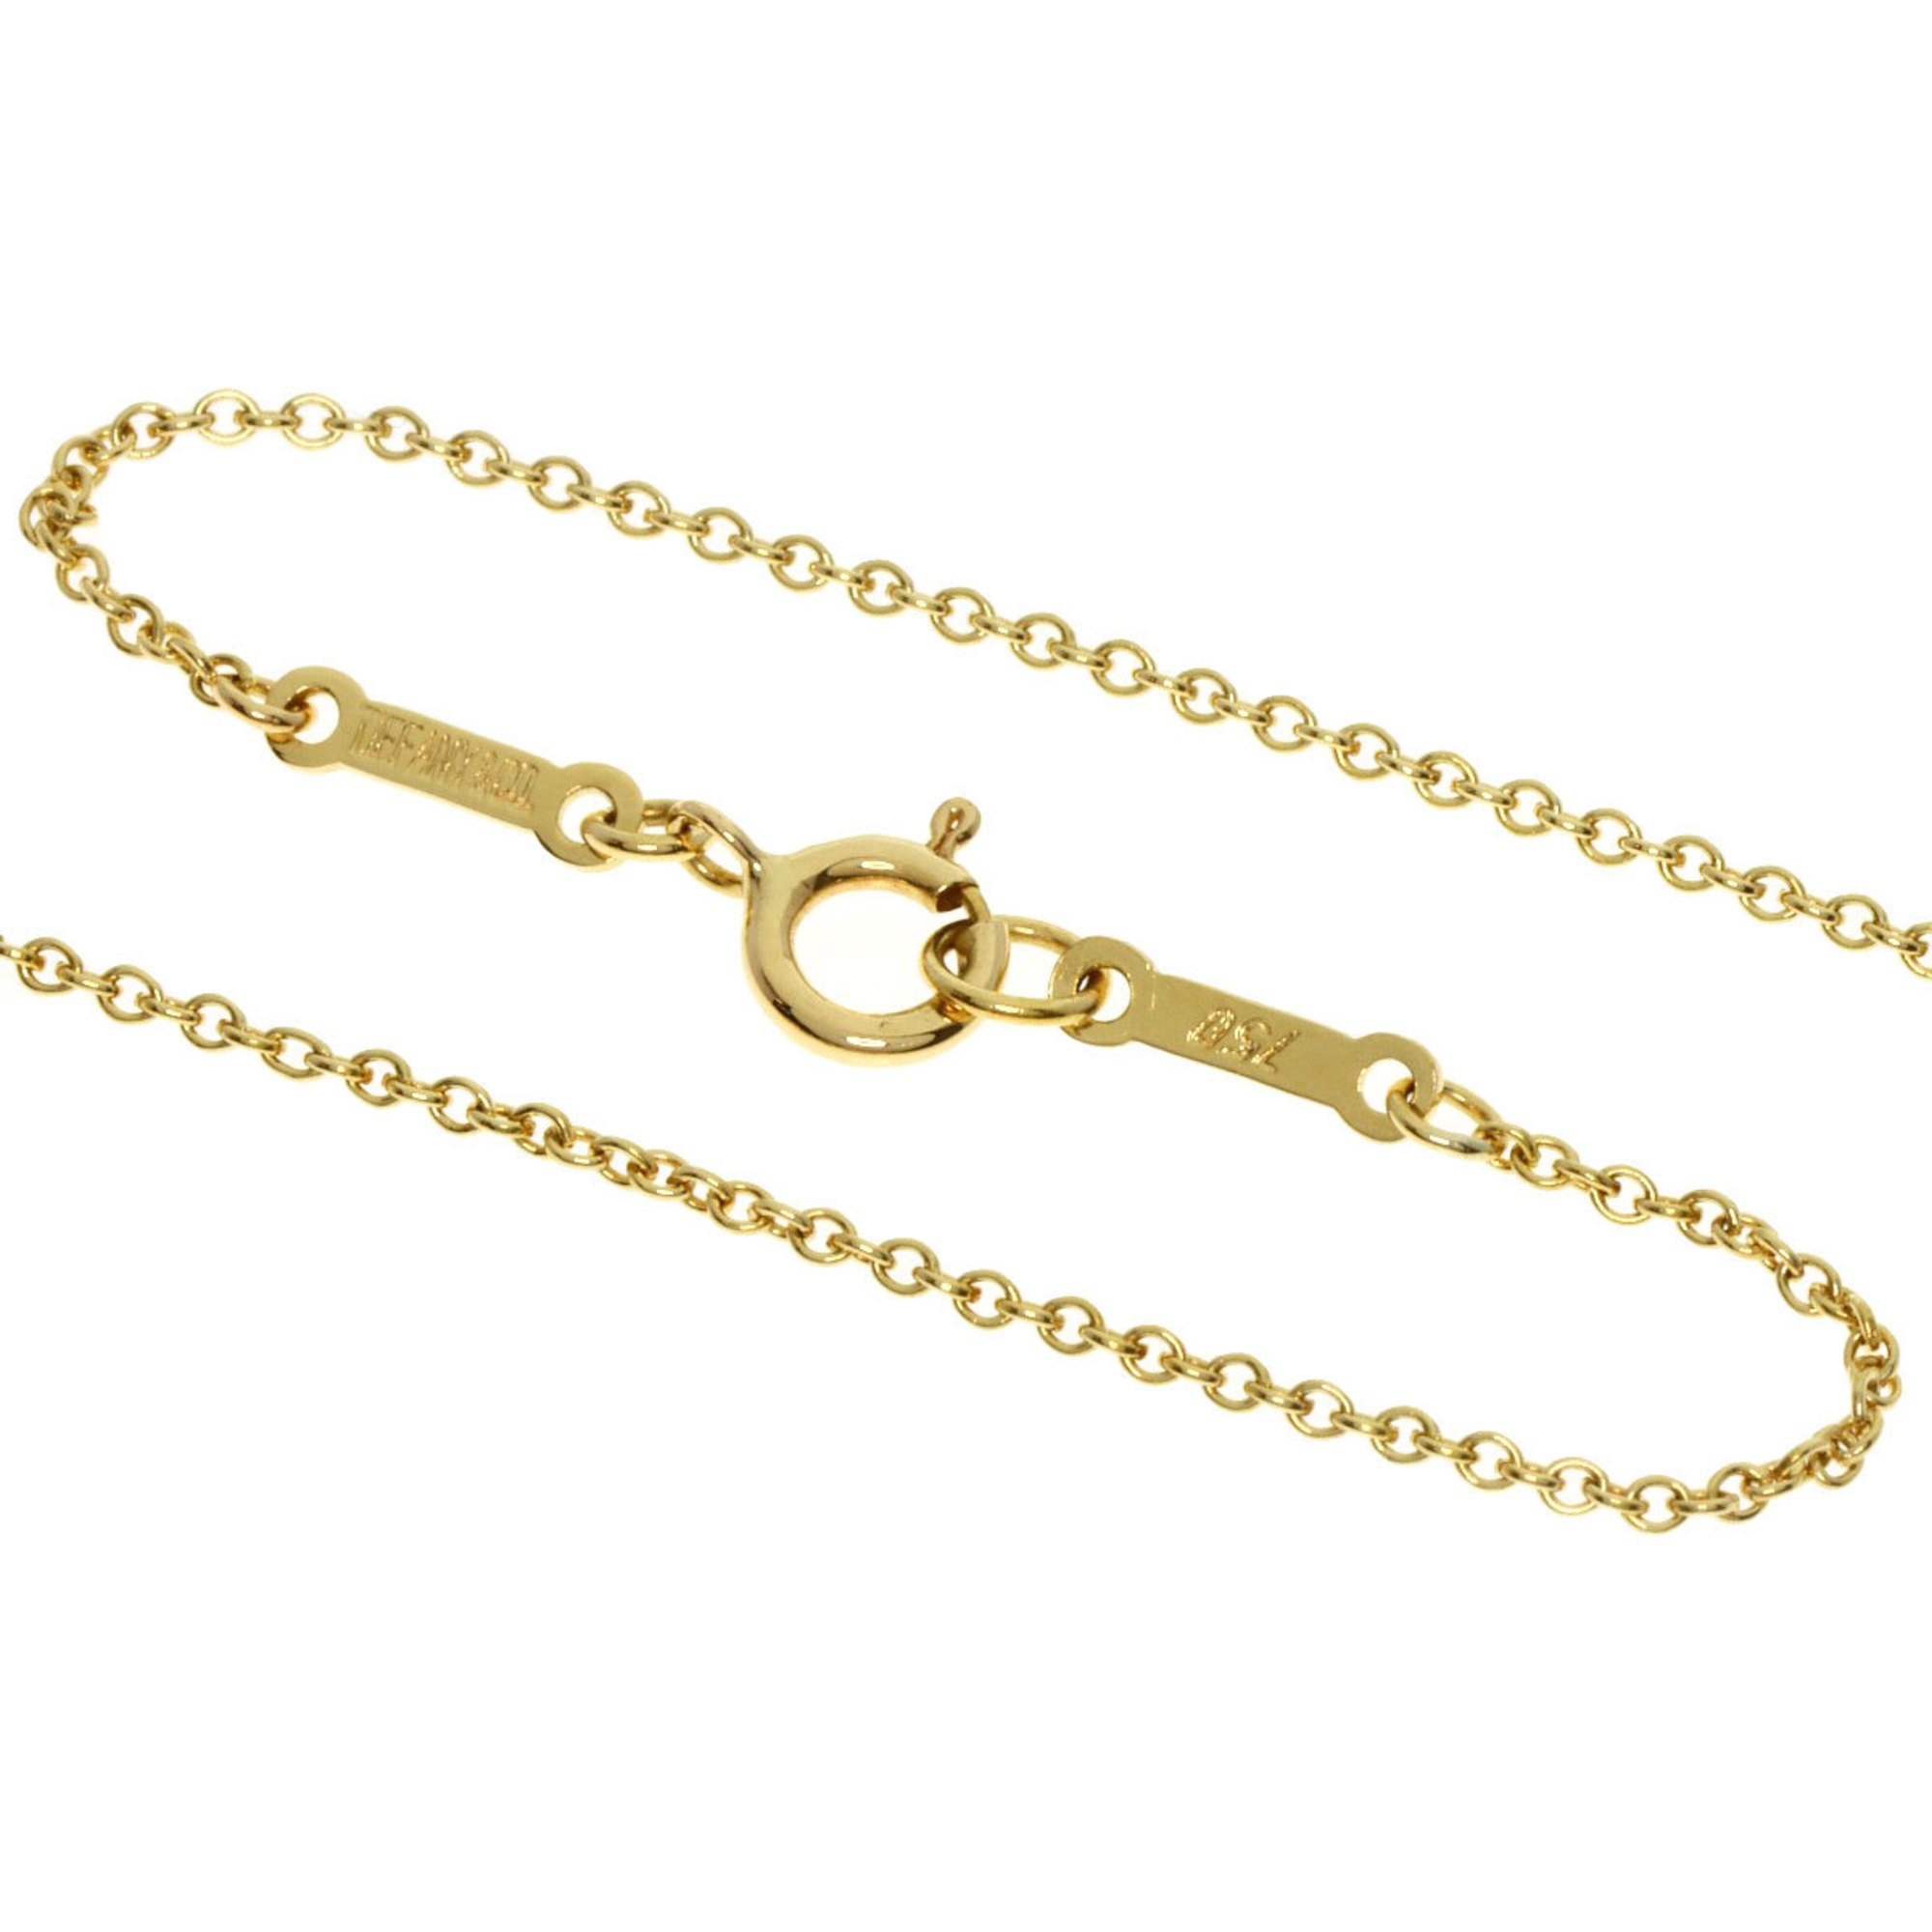 Tiffany Full Heart Necklace K18 Yellow Gold Women's TIFFANY&Co.